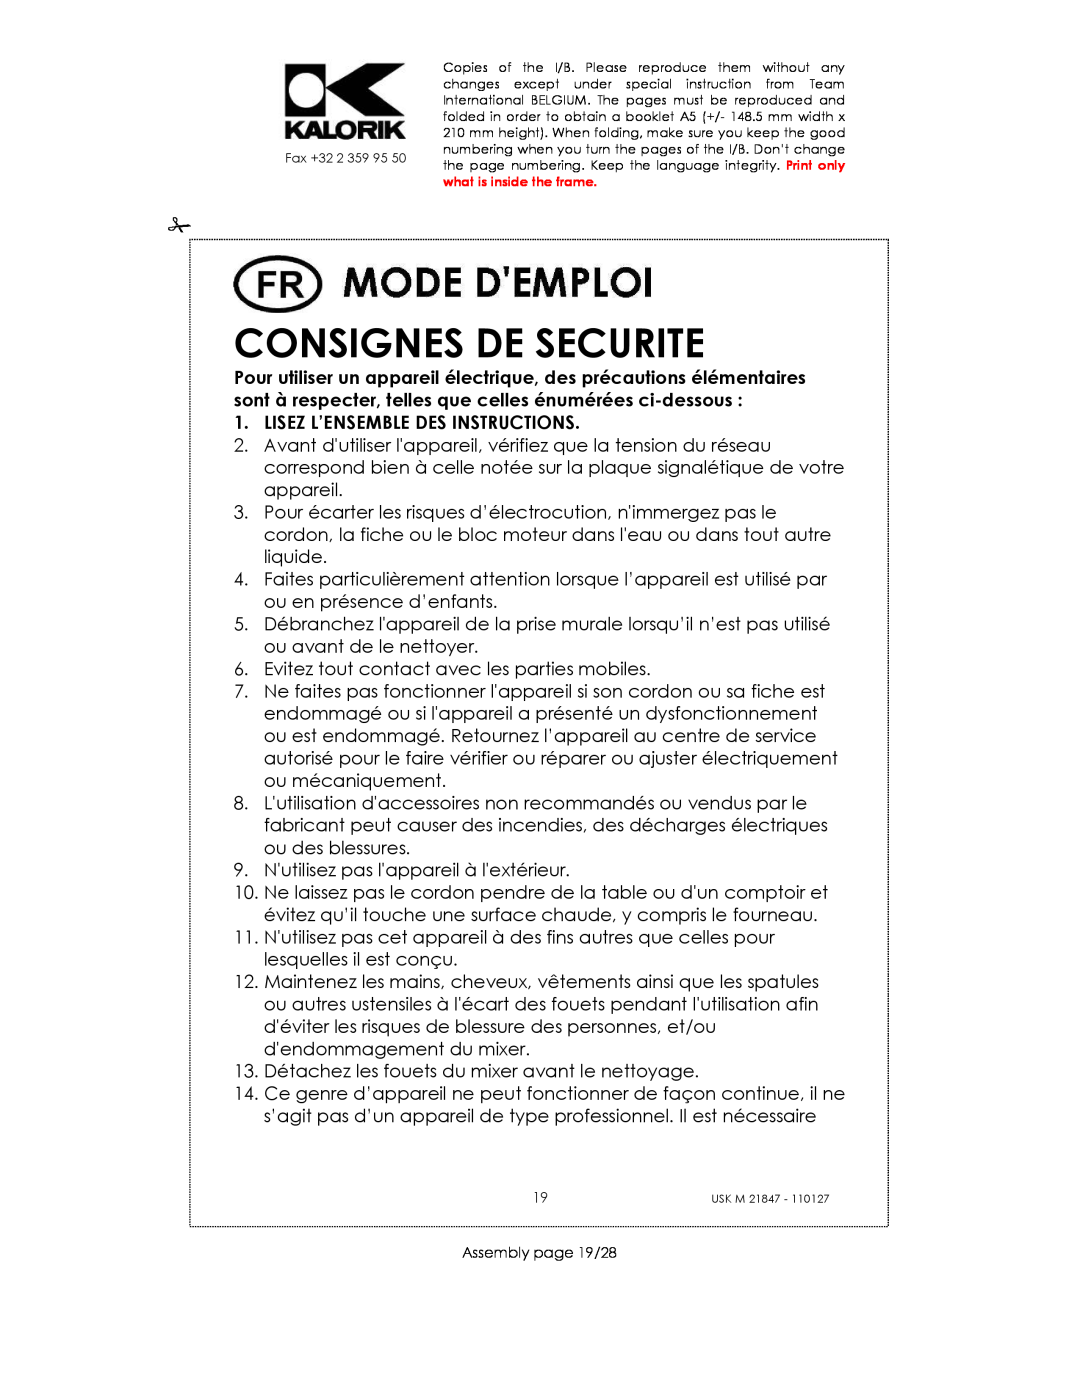 Kalorik USK M 21847 manual Consignes De Securite, Lisez L’Ensemble Des Instructions 